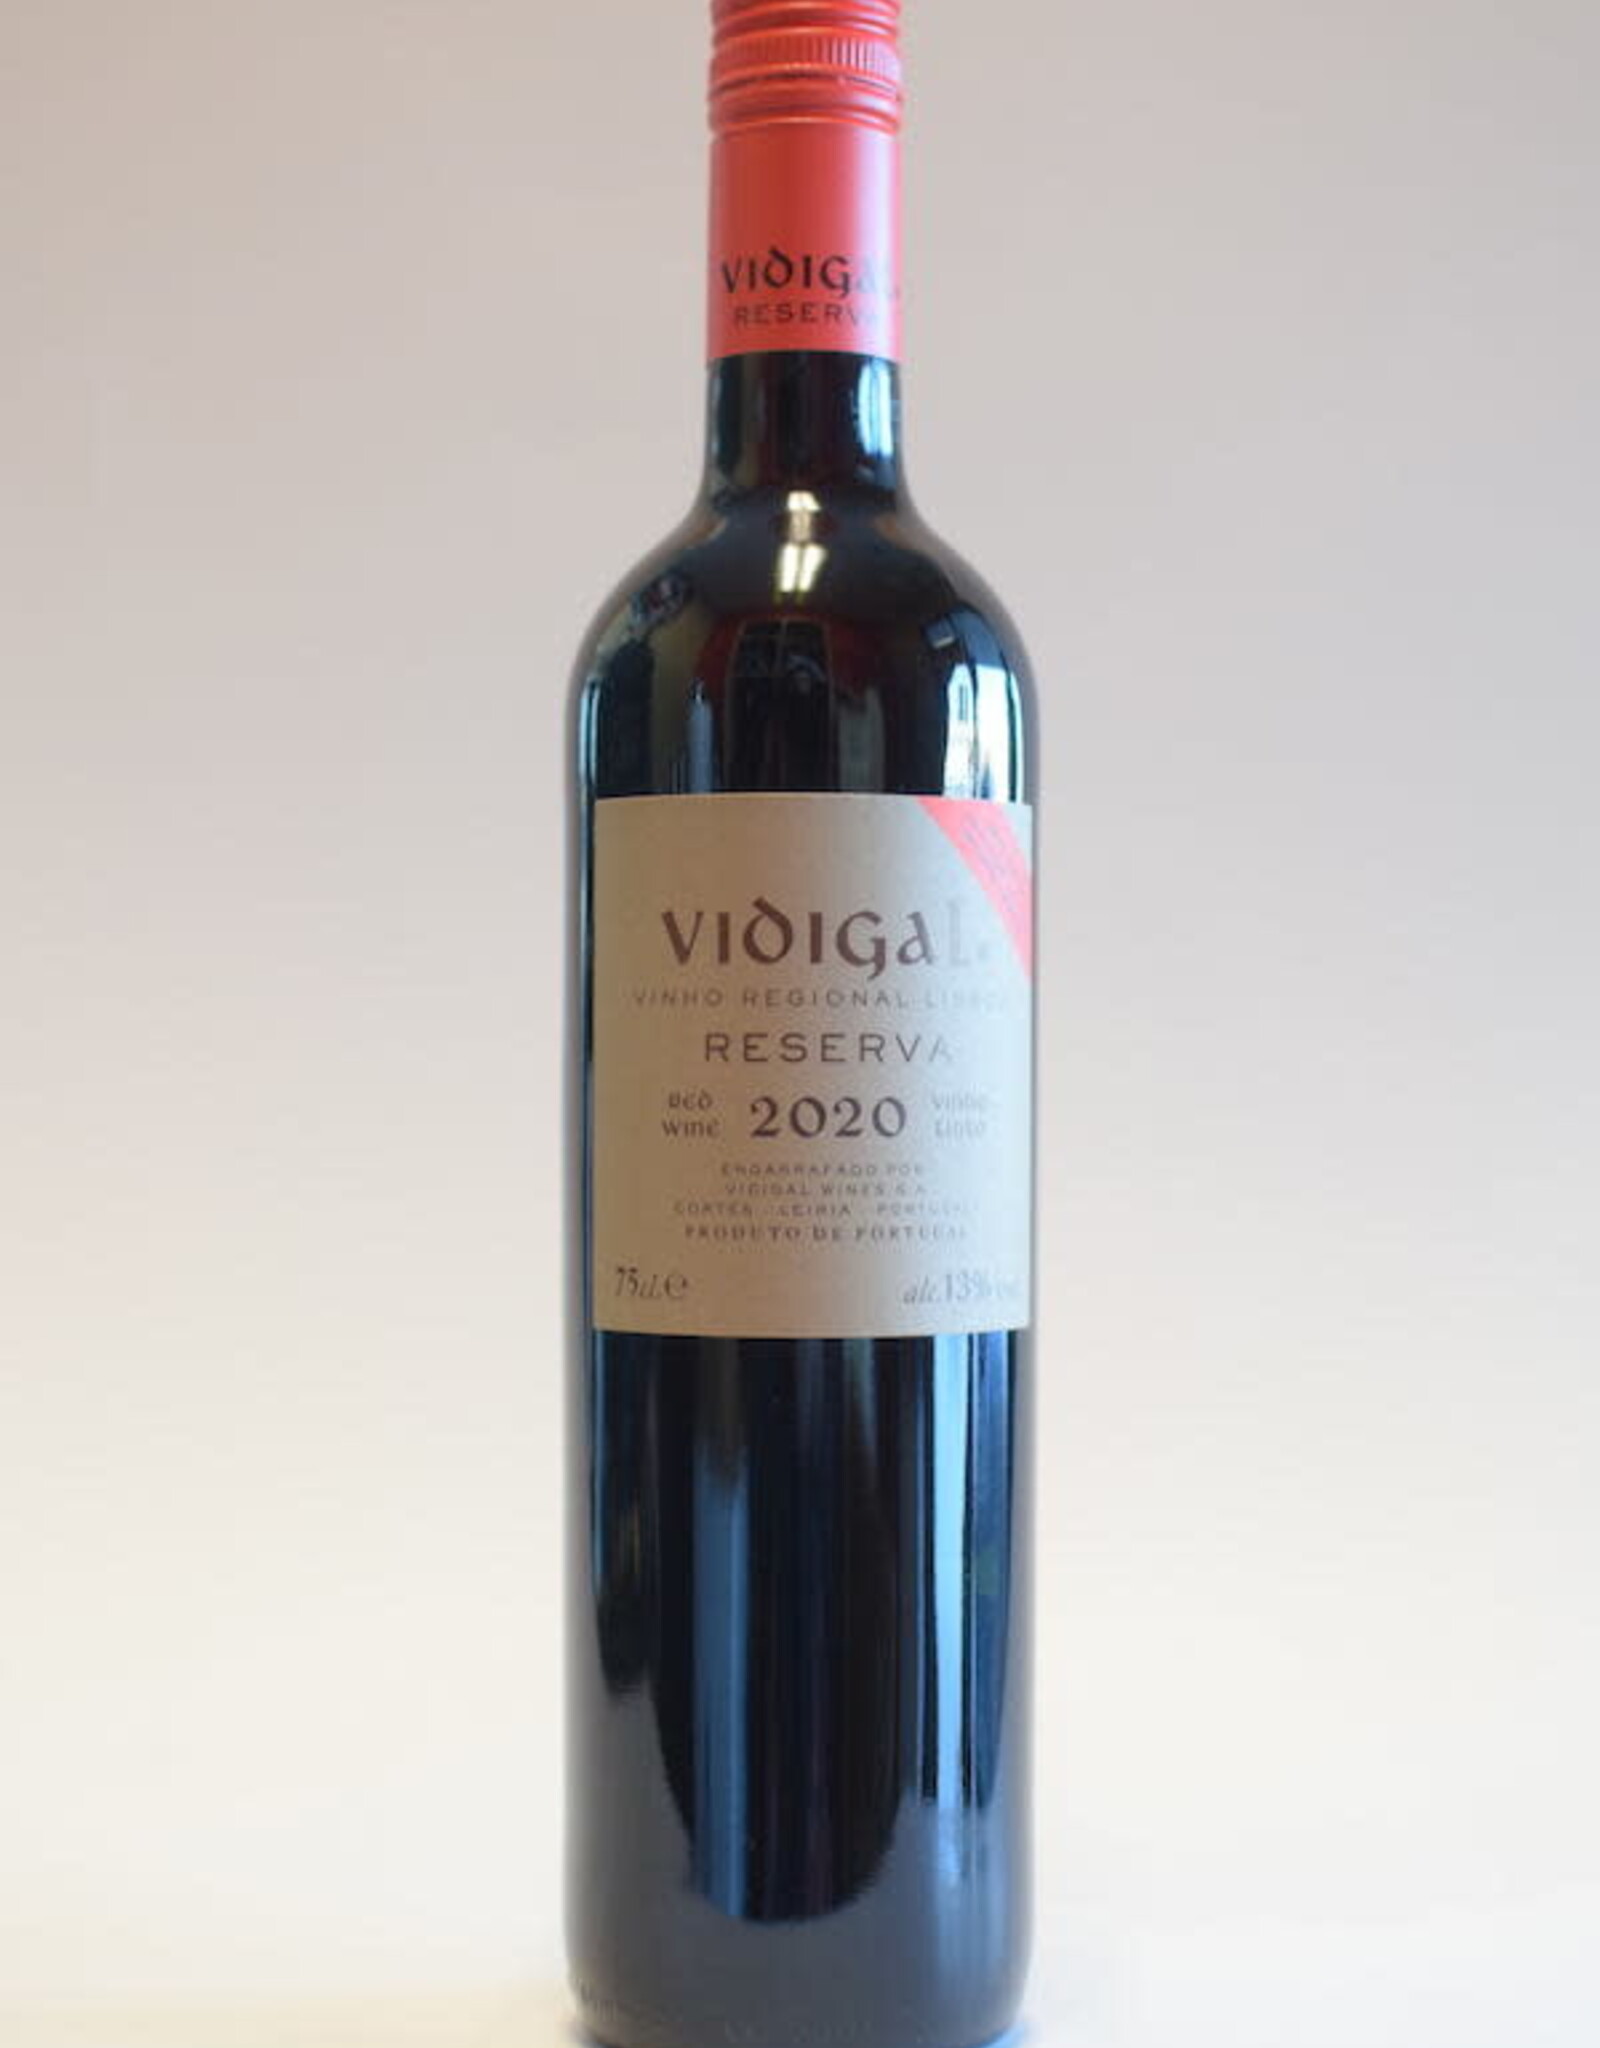 Vidigal Reserva Vinho Tinto